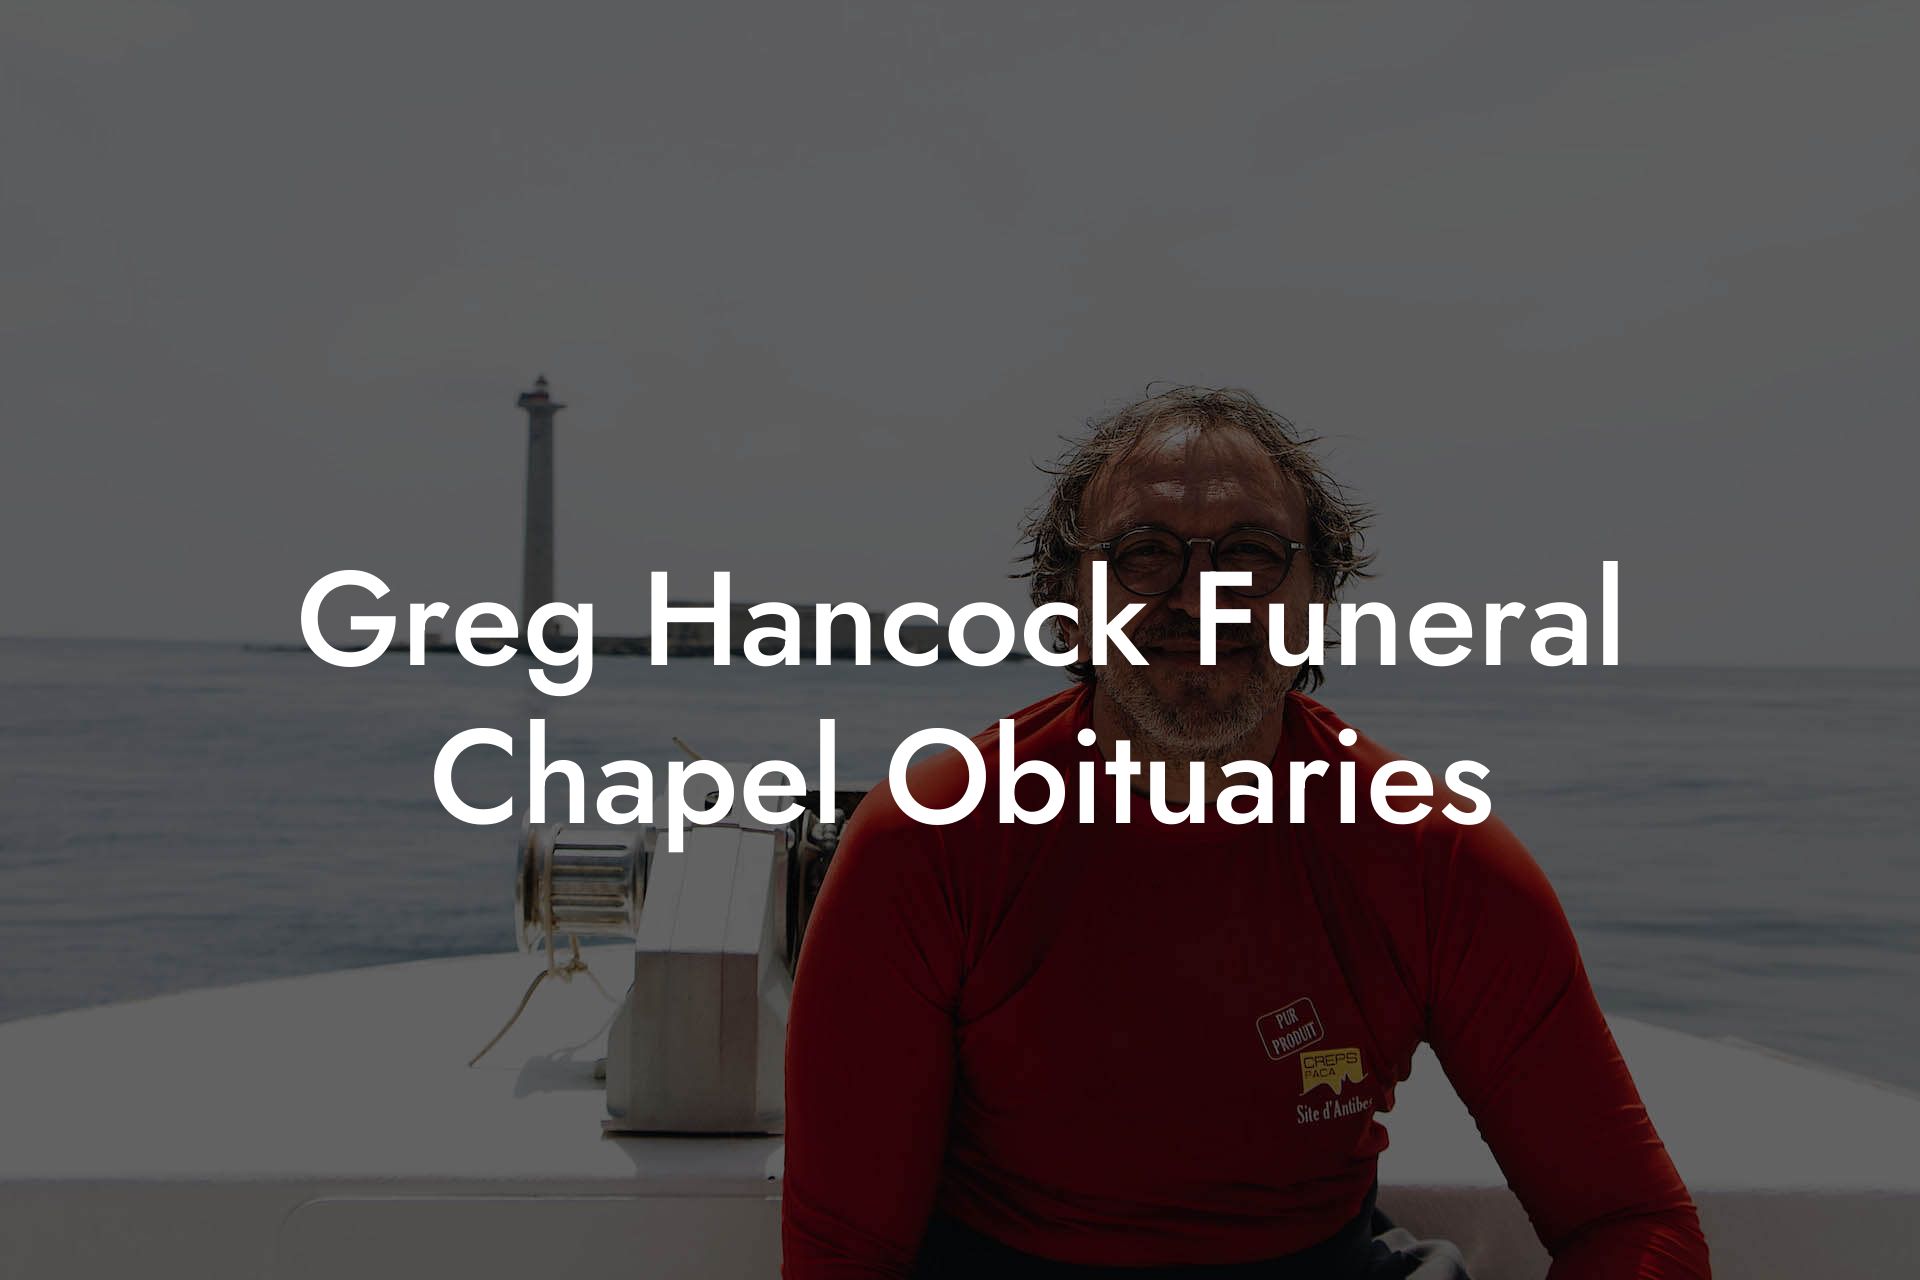 Greg Hancock Funeral Chapel Obituaries